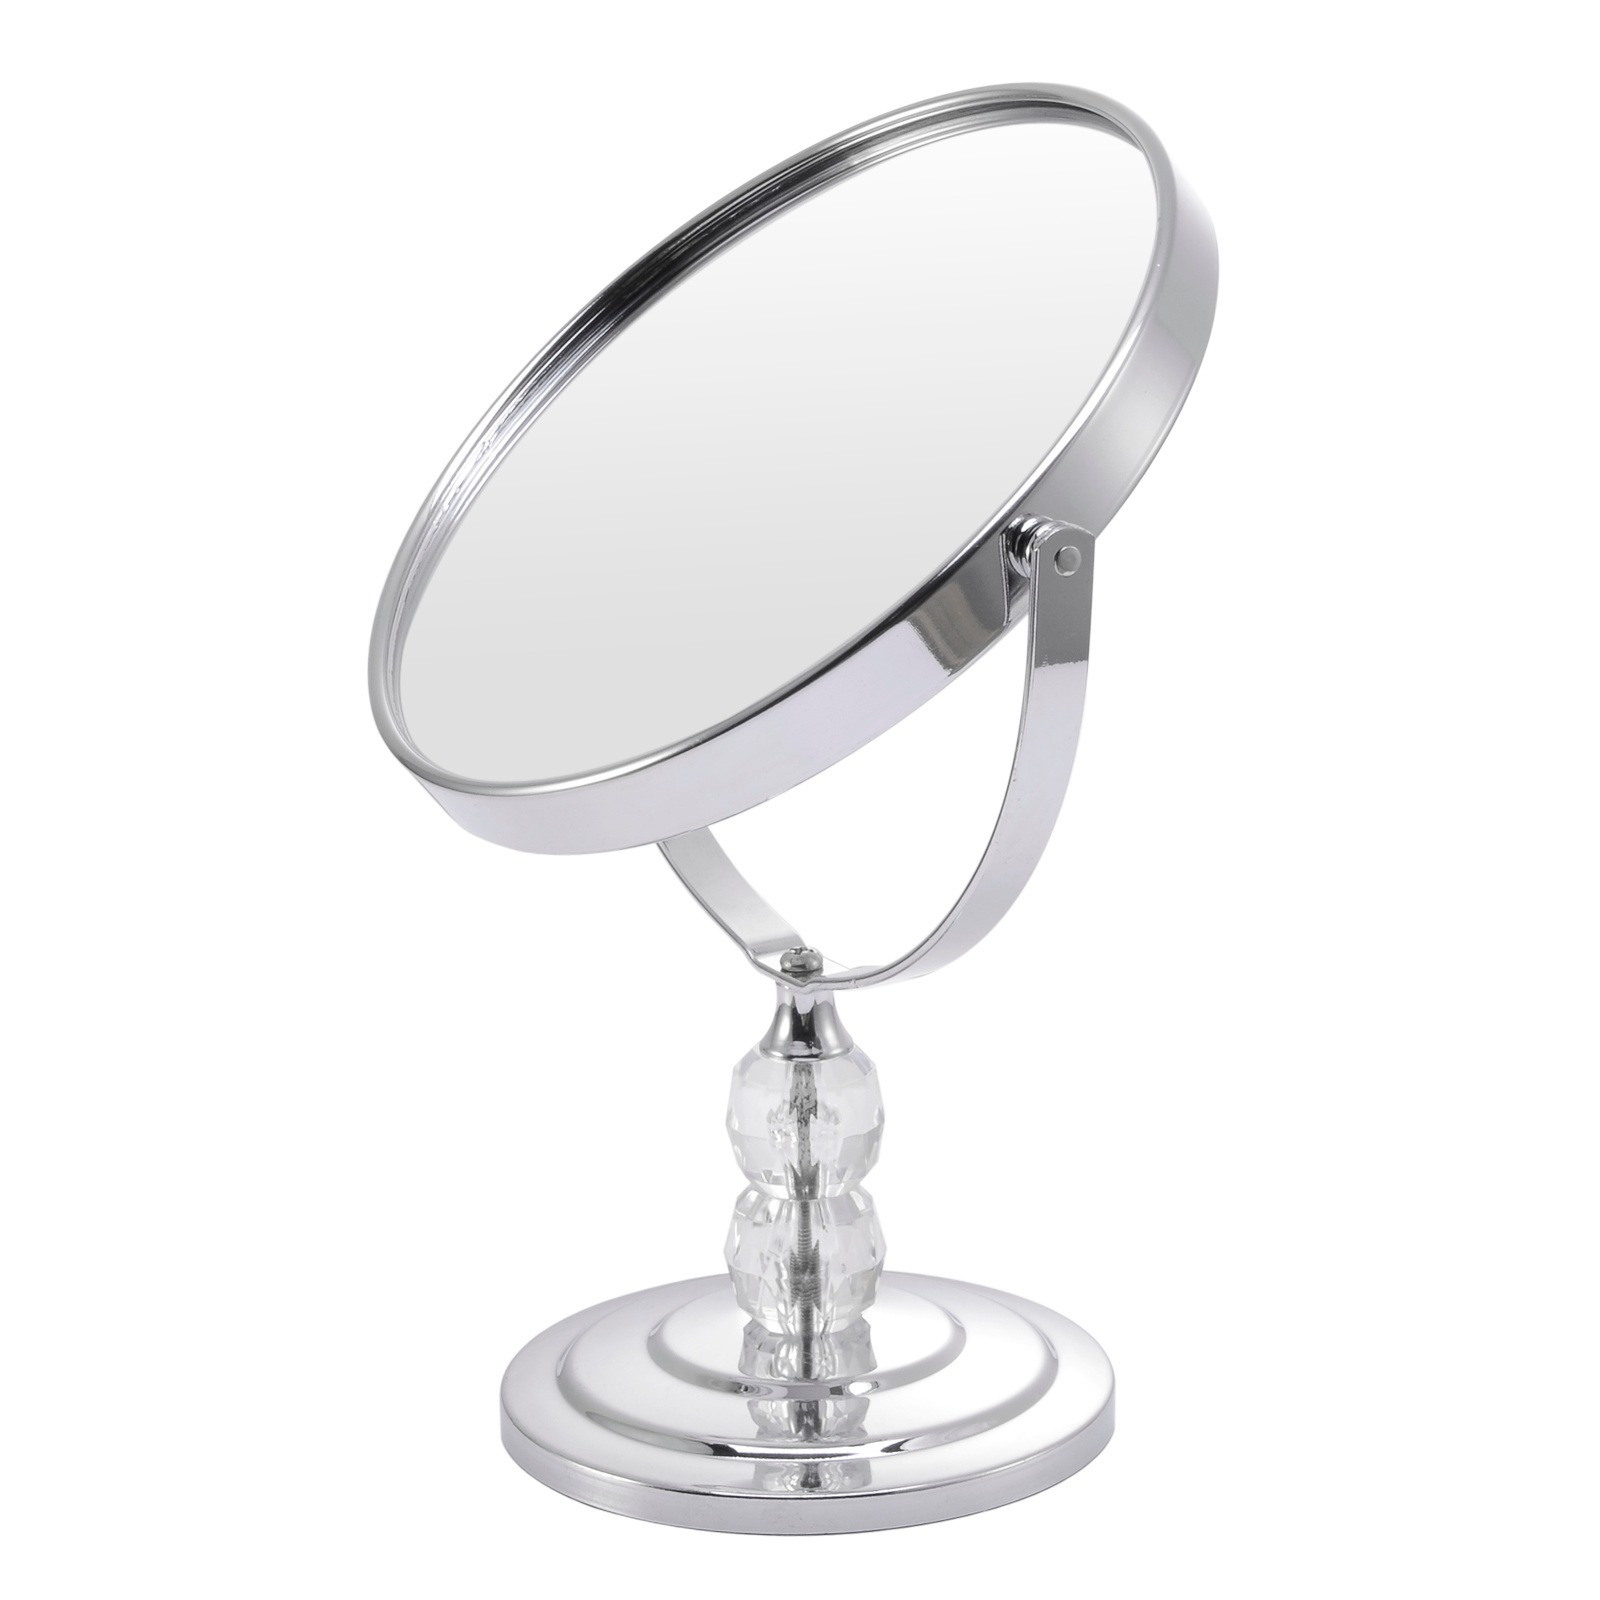 台式金属镜子桌面1:2放大功能梳妆镜厂家定做双面可旋转美容化妆镜